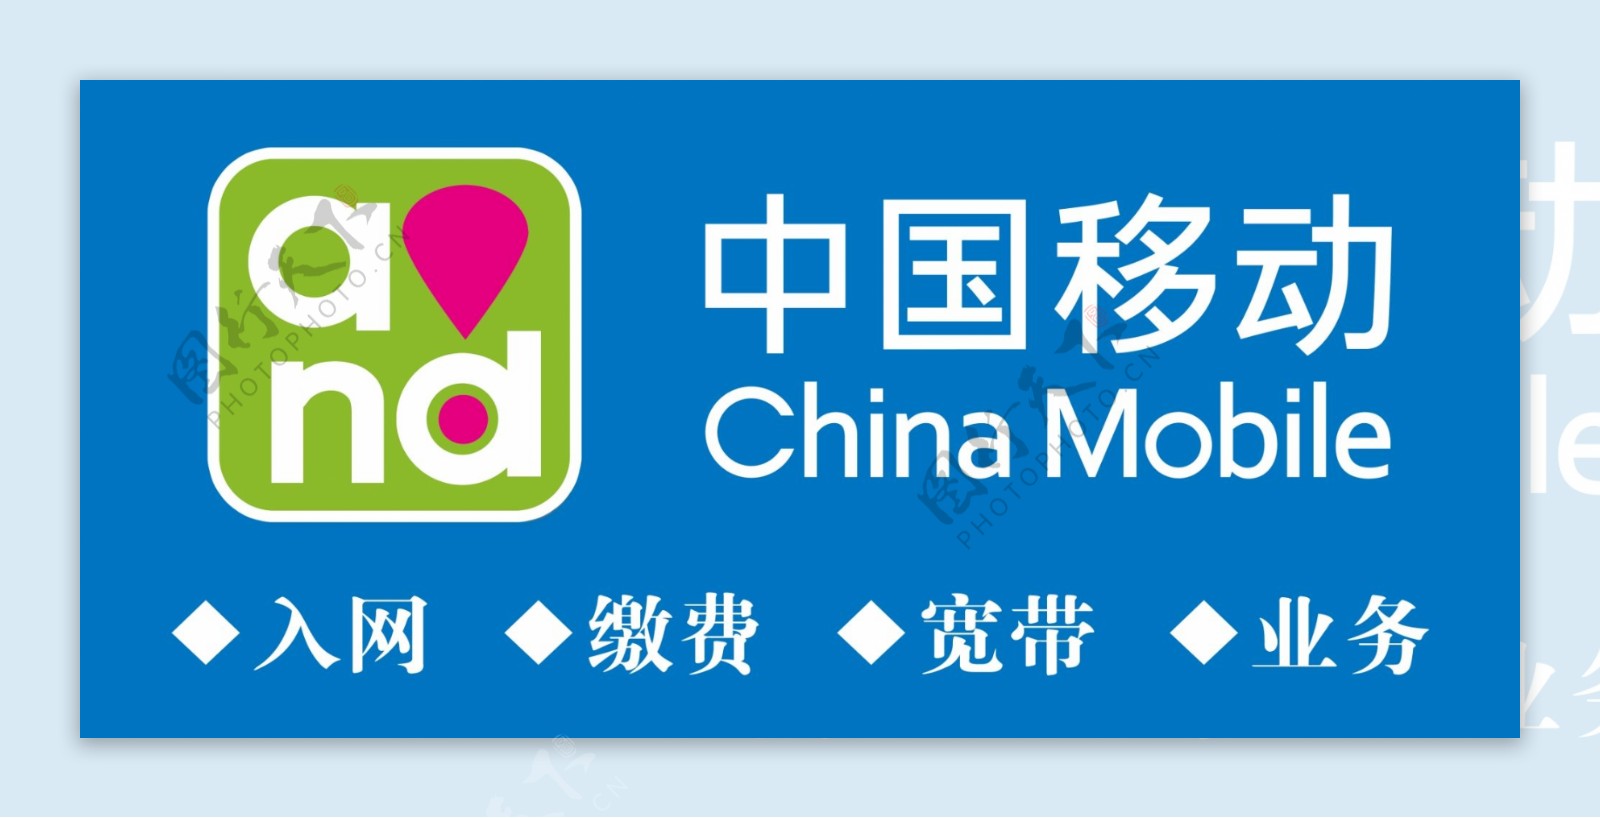 中国移动标志写真